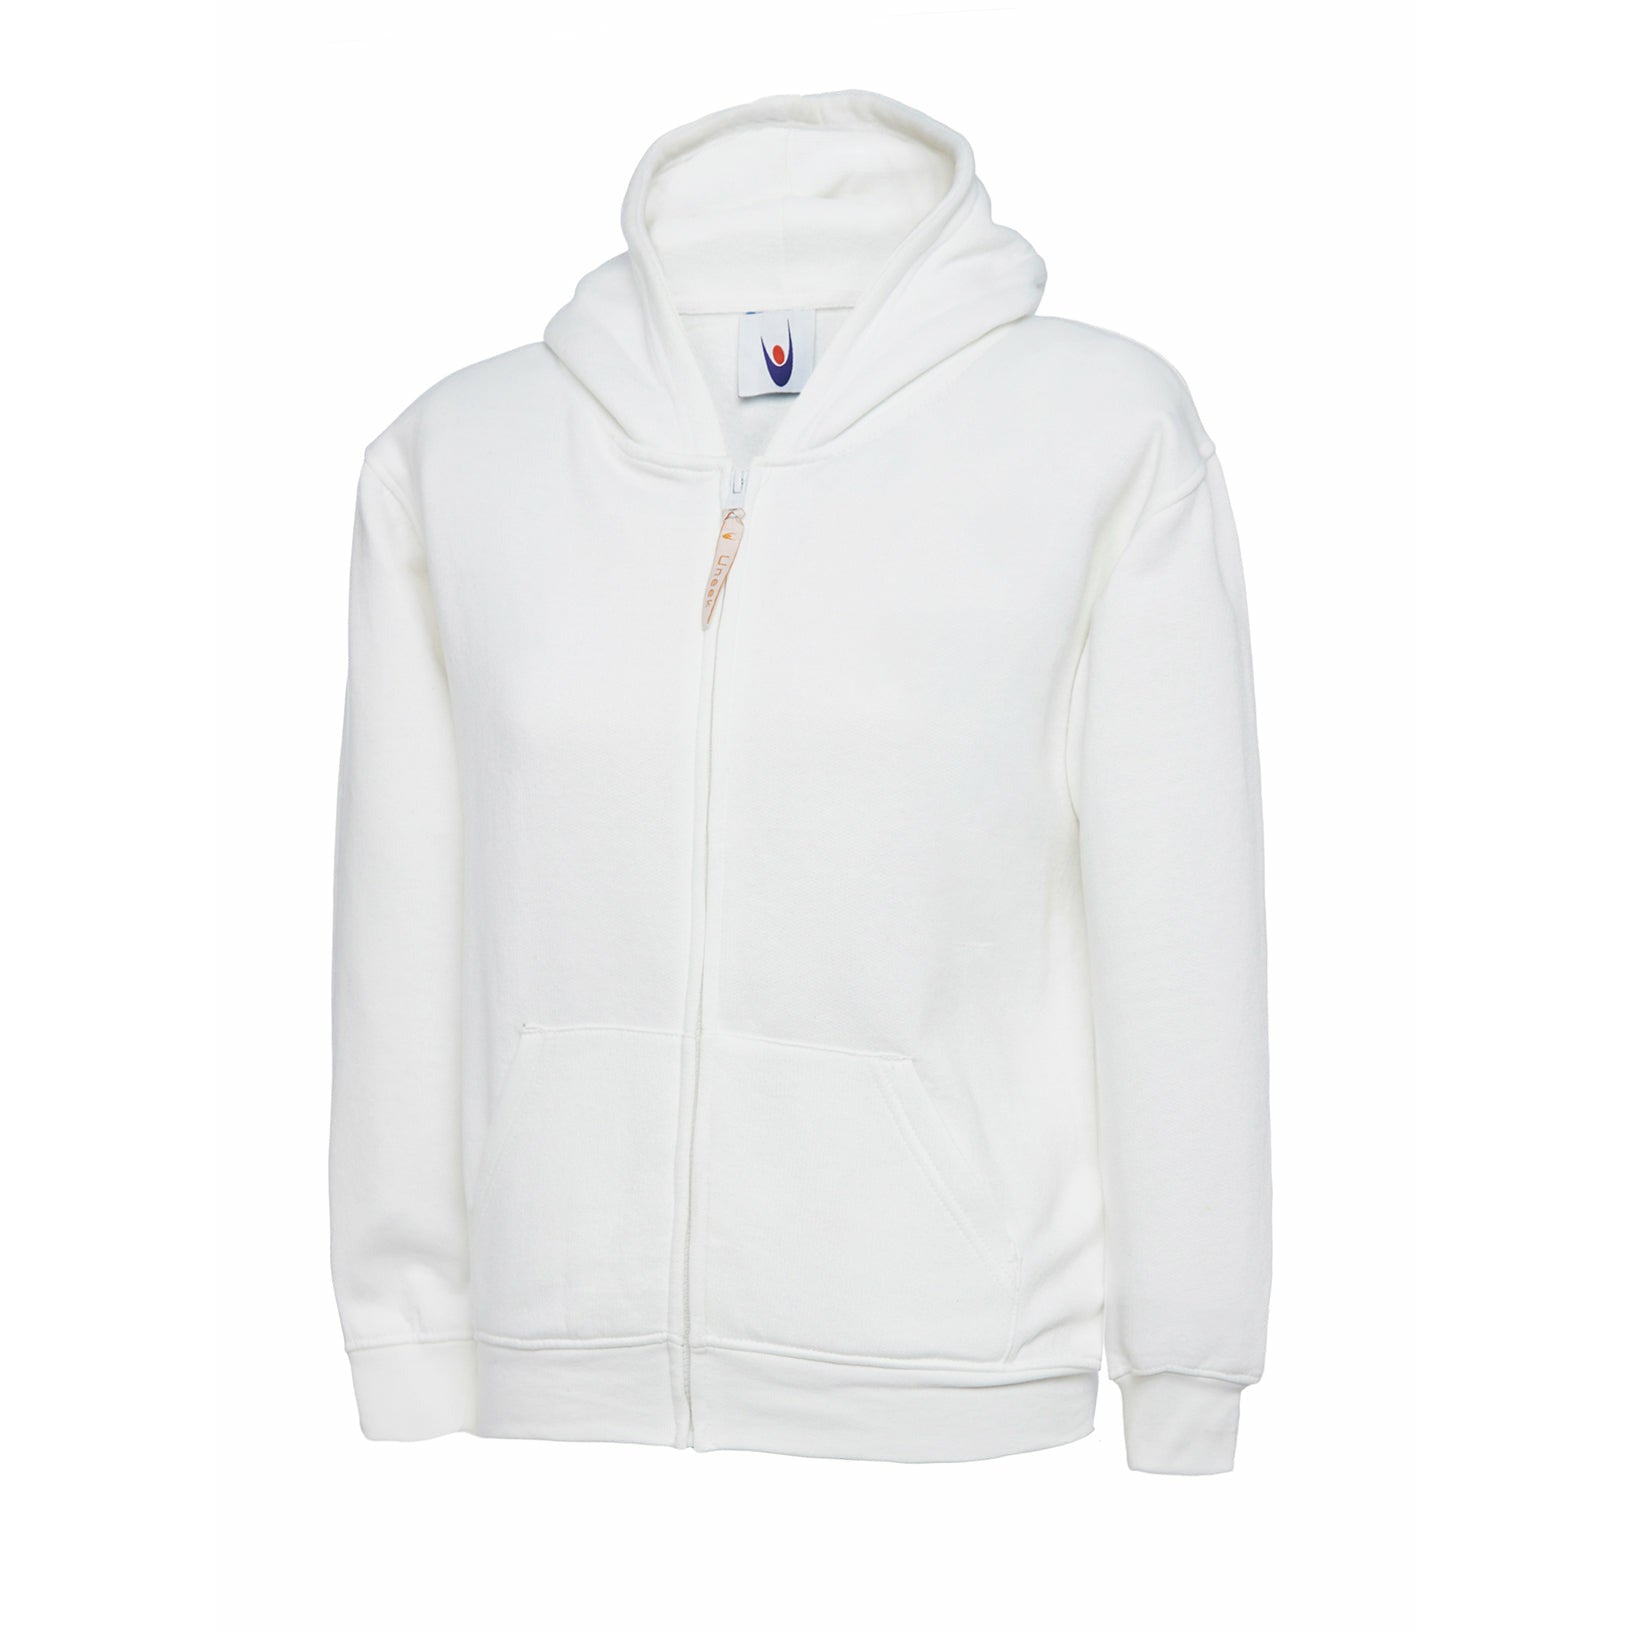 Childrens Classic Full Zip Hooded Sweatshirt White